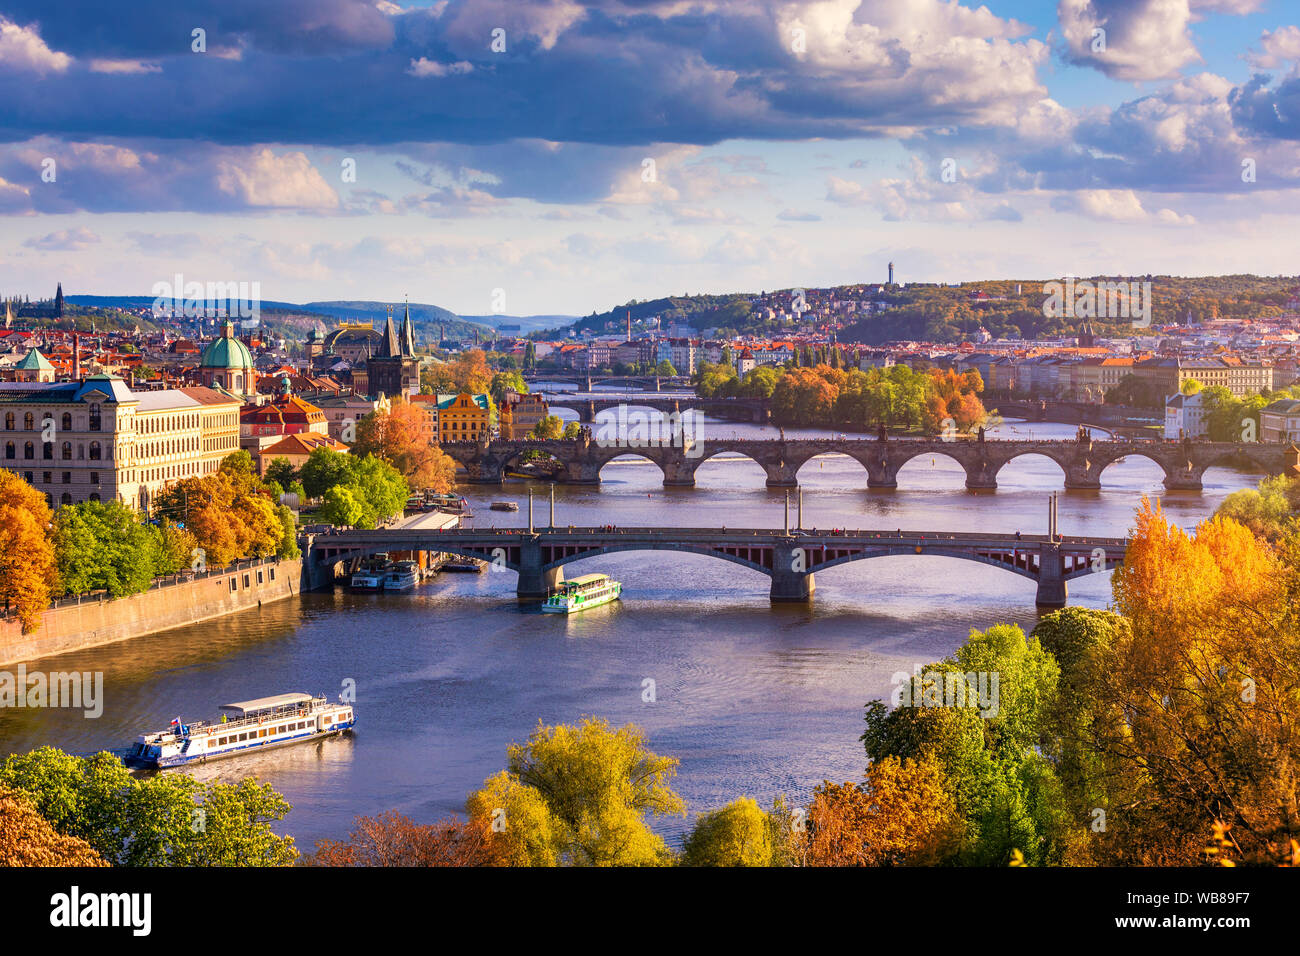 Herbst Blick auf die Karlsbrücke über die Moldau in Prag, Tschechische Republik. Herbst Blick auf die Karlsbrücke, die Prager Altstadt und die Moldau von beliebten Stockfoto